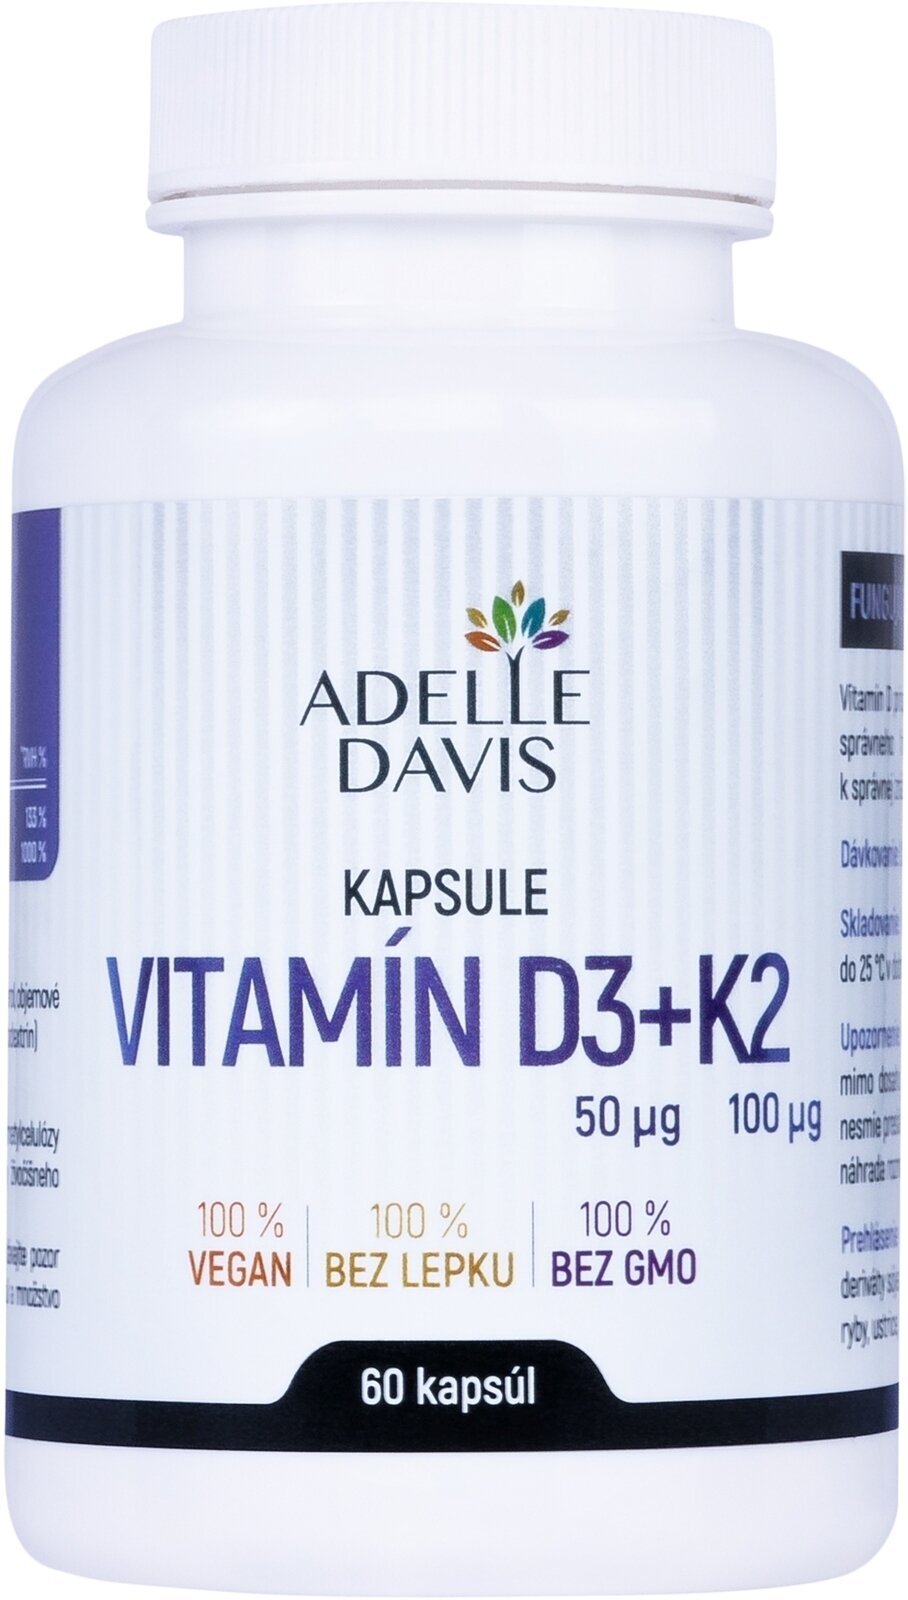 Vitamin D Adelle Davis Vitamin D3 + K2 60 Capsules Vitamin D